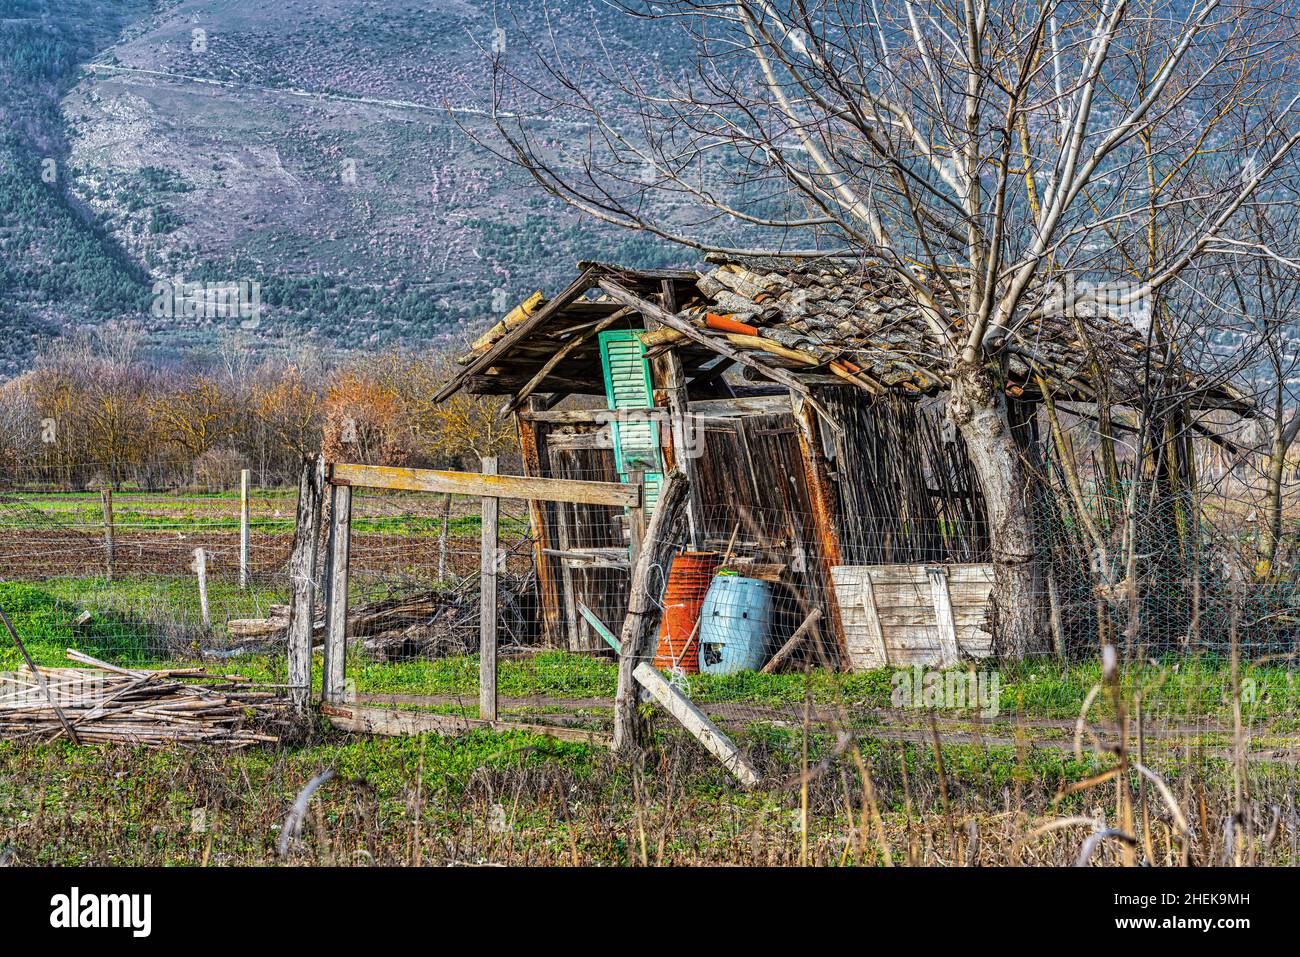 Vecchia casa di campagna ramshackle usata come deposito per gli attrezzi per la campagna. Abruzzo, Italia, Europa Foto Stock